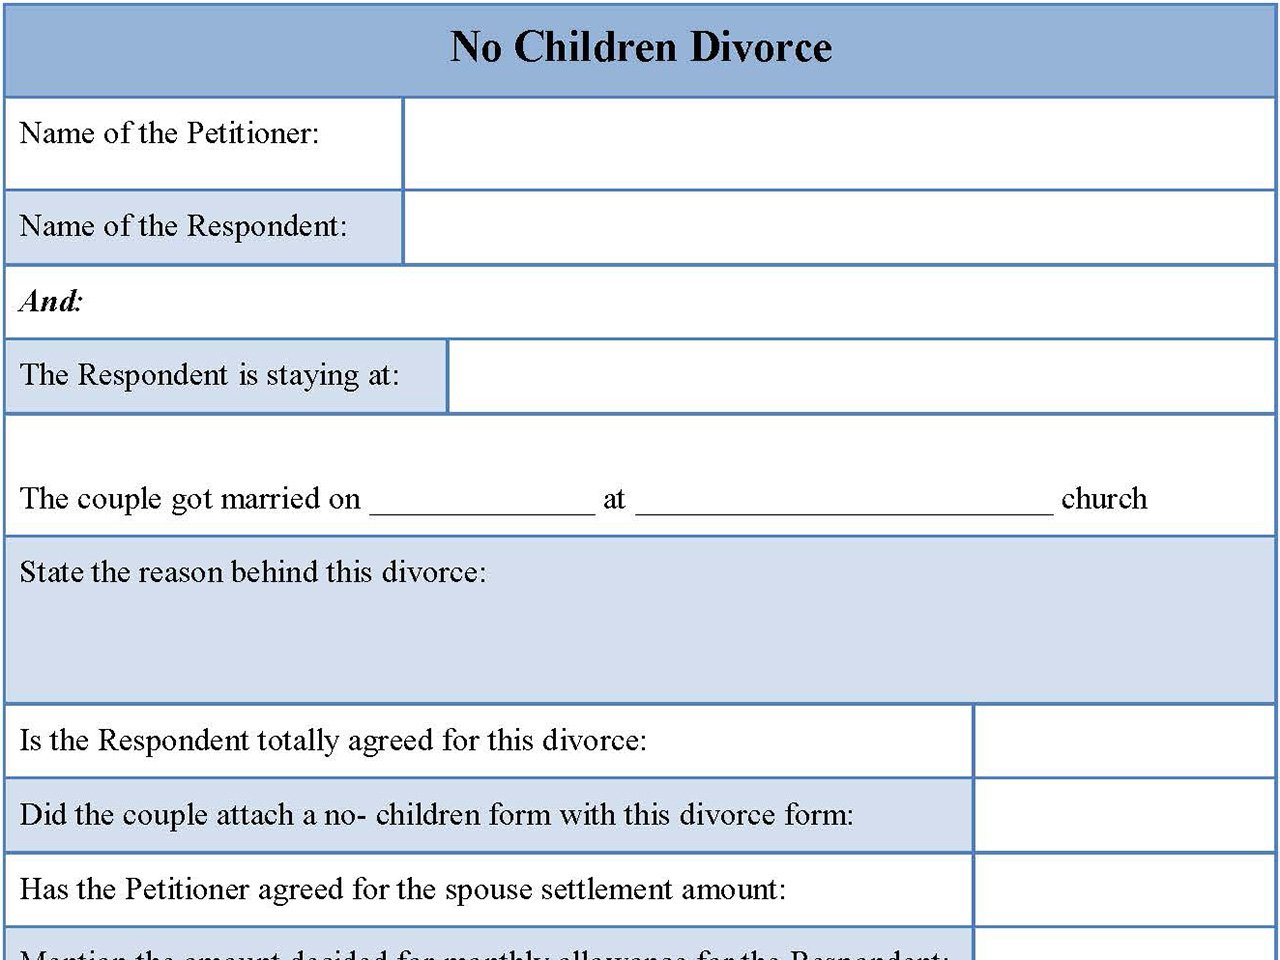 No children divorce form